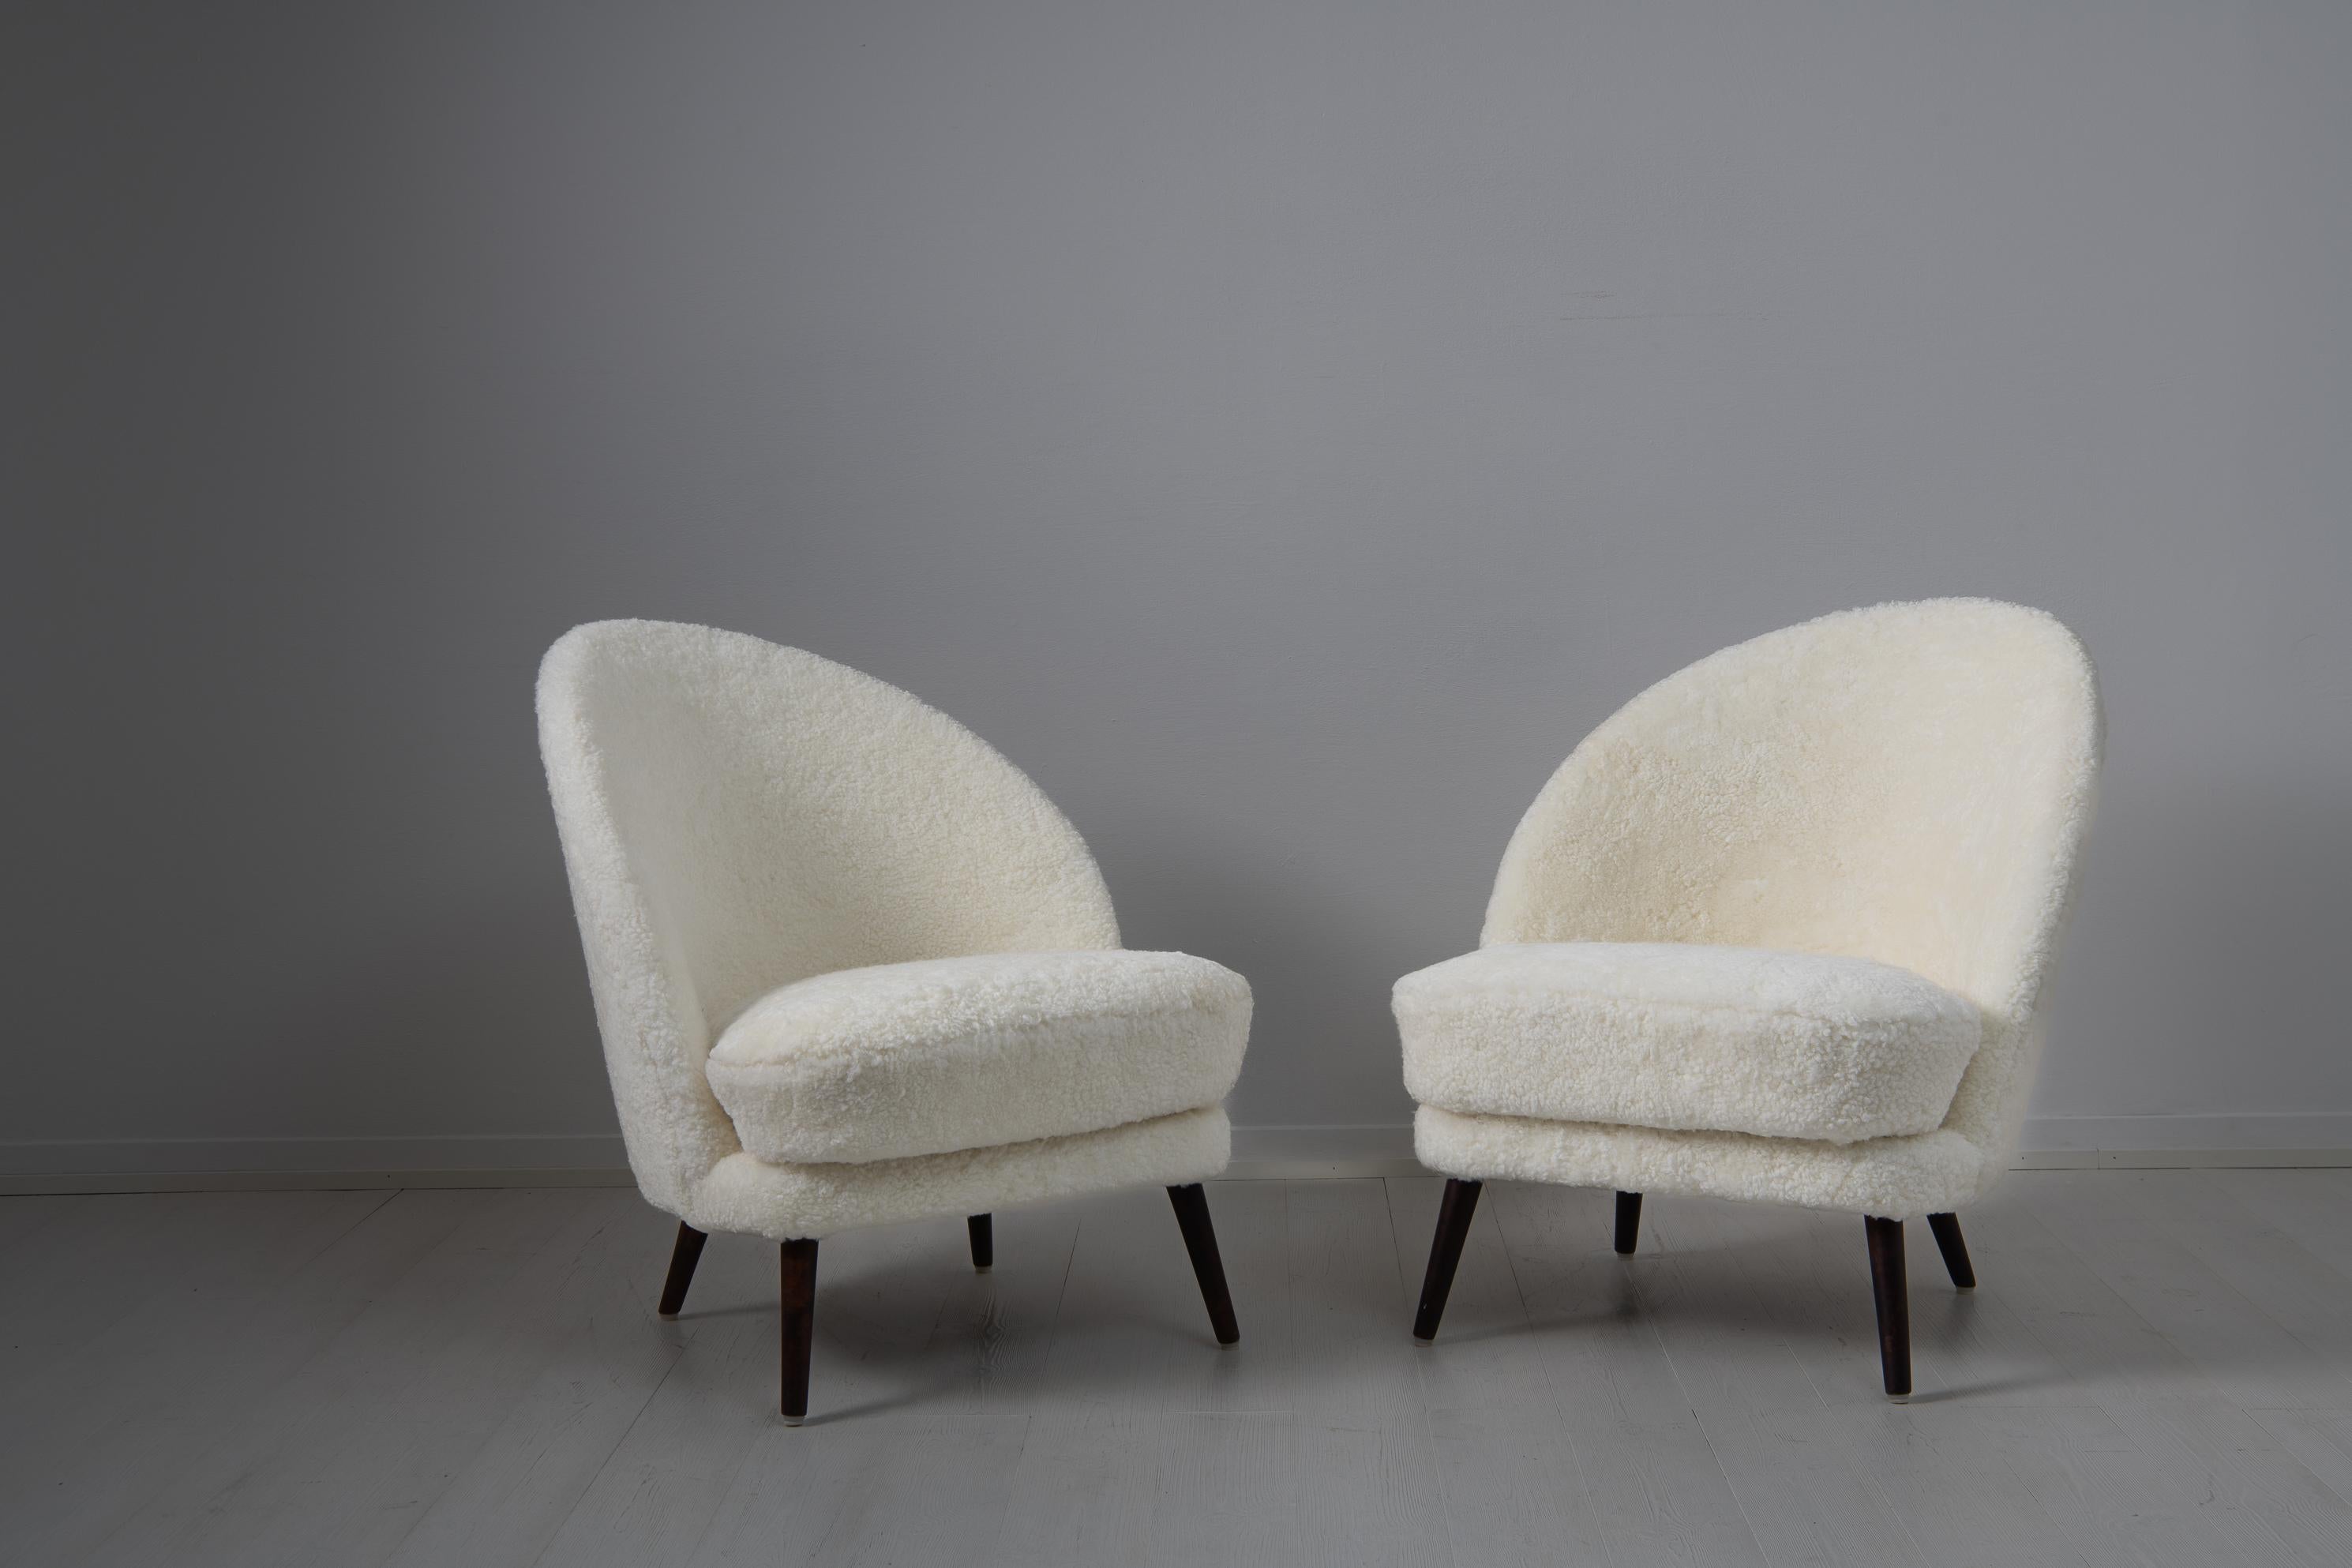 Skandinavische moderne Schafsfellstühle von Arne Norell, Schweden, aus der Mitte des 20. Jahrhunderts. Die Stühle haben eine asymmetrische Rückenlehne und Beine aus gebeizter Birke. Das Design ist klar und klassisch, wobei die Asymmetrie für